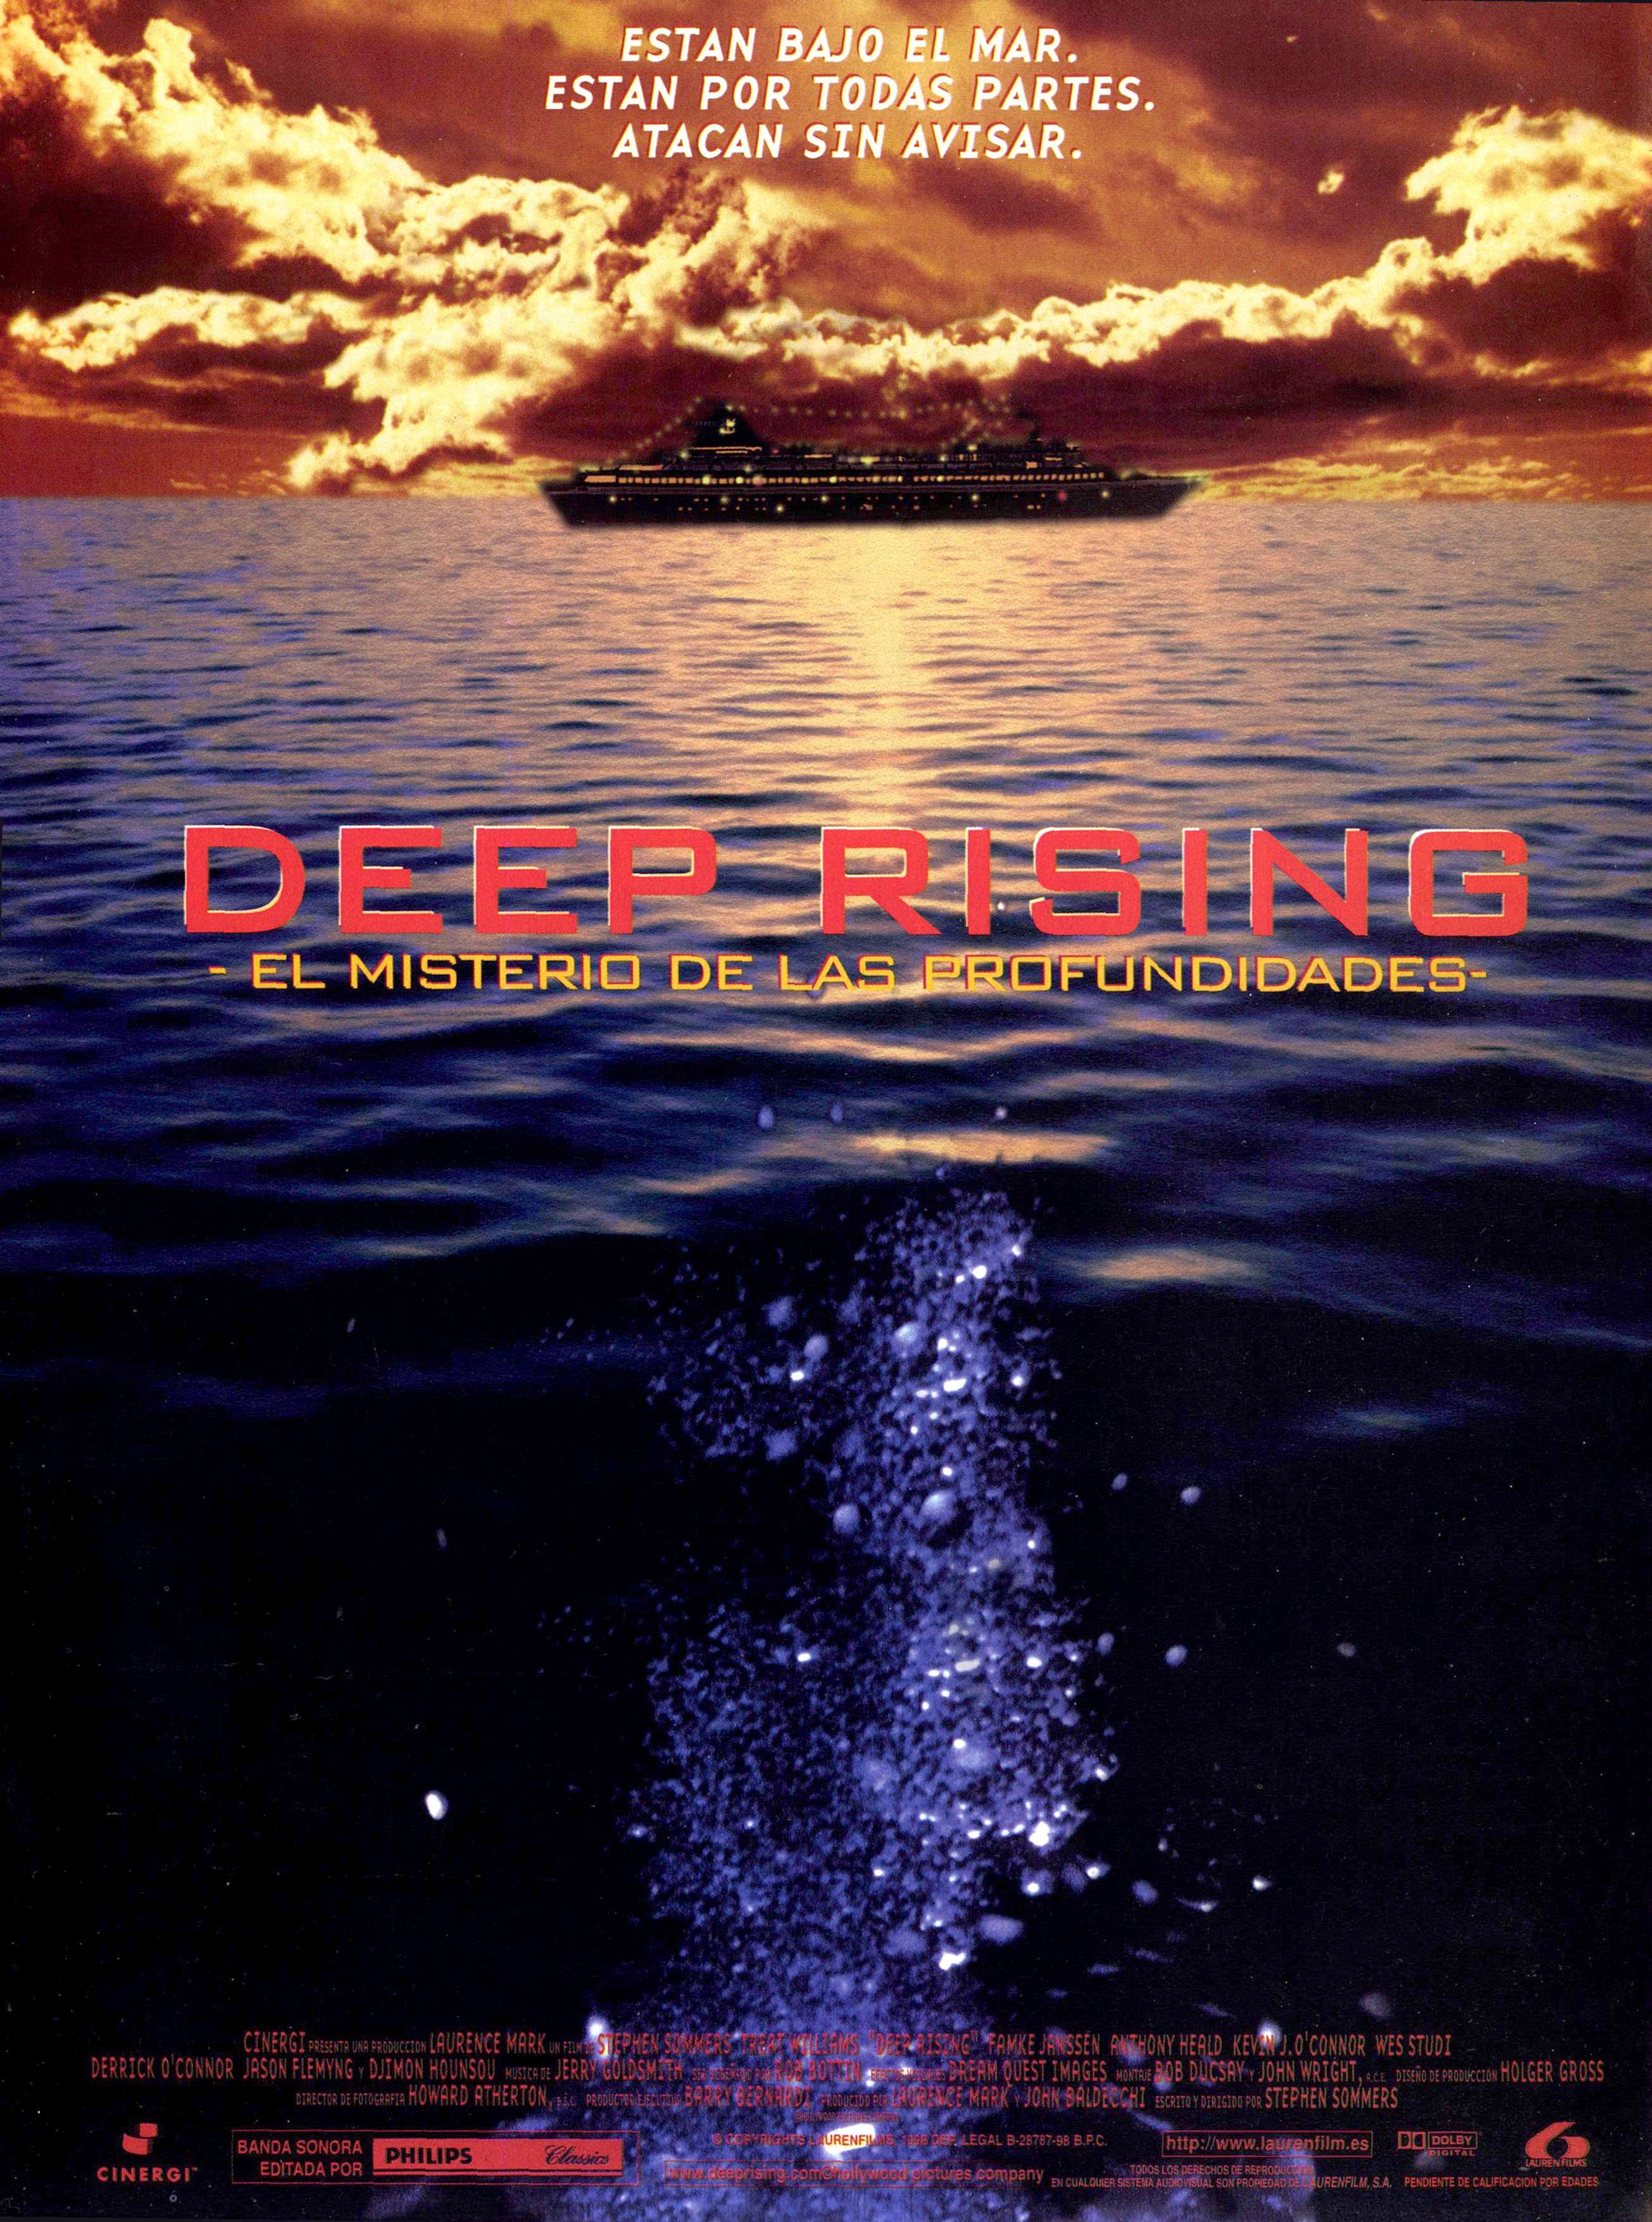 1998 Deep Rising